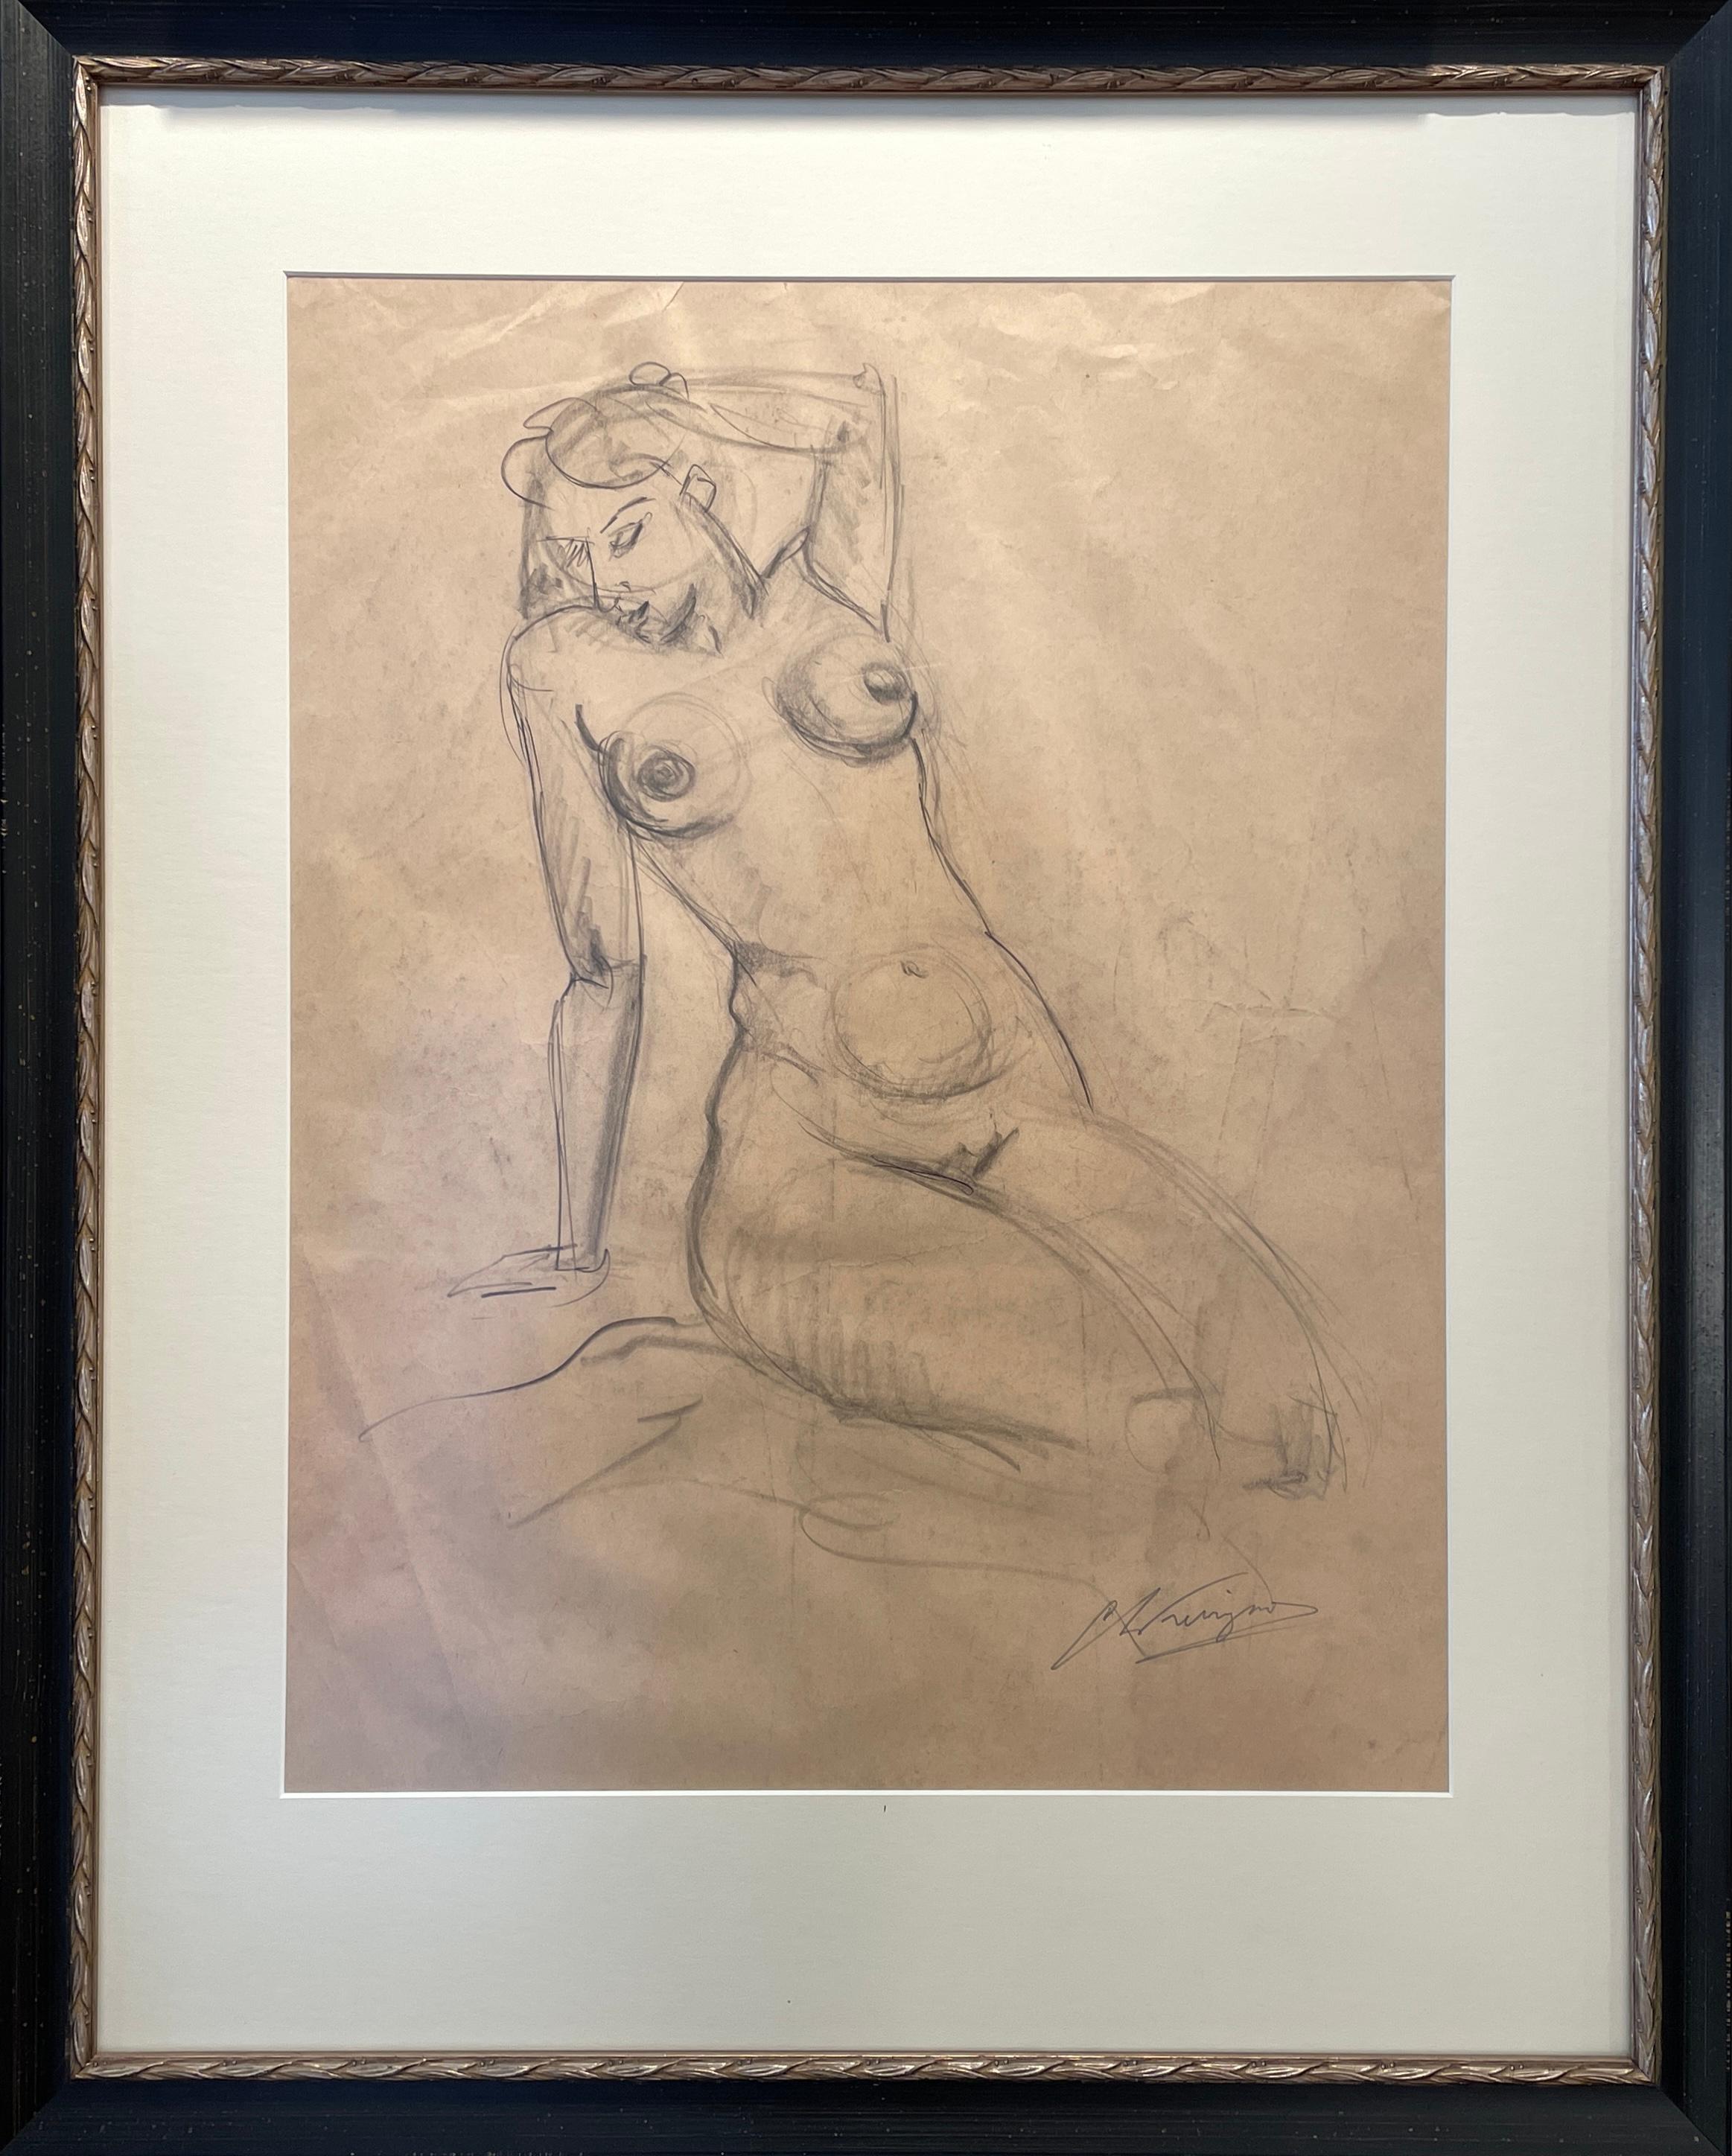 « Nude Woman » de Chris Ferrigno - Des années 1970 - Dessin figuratif d'un nu au crayon sur papier